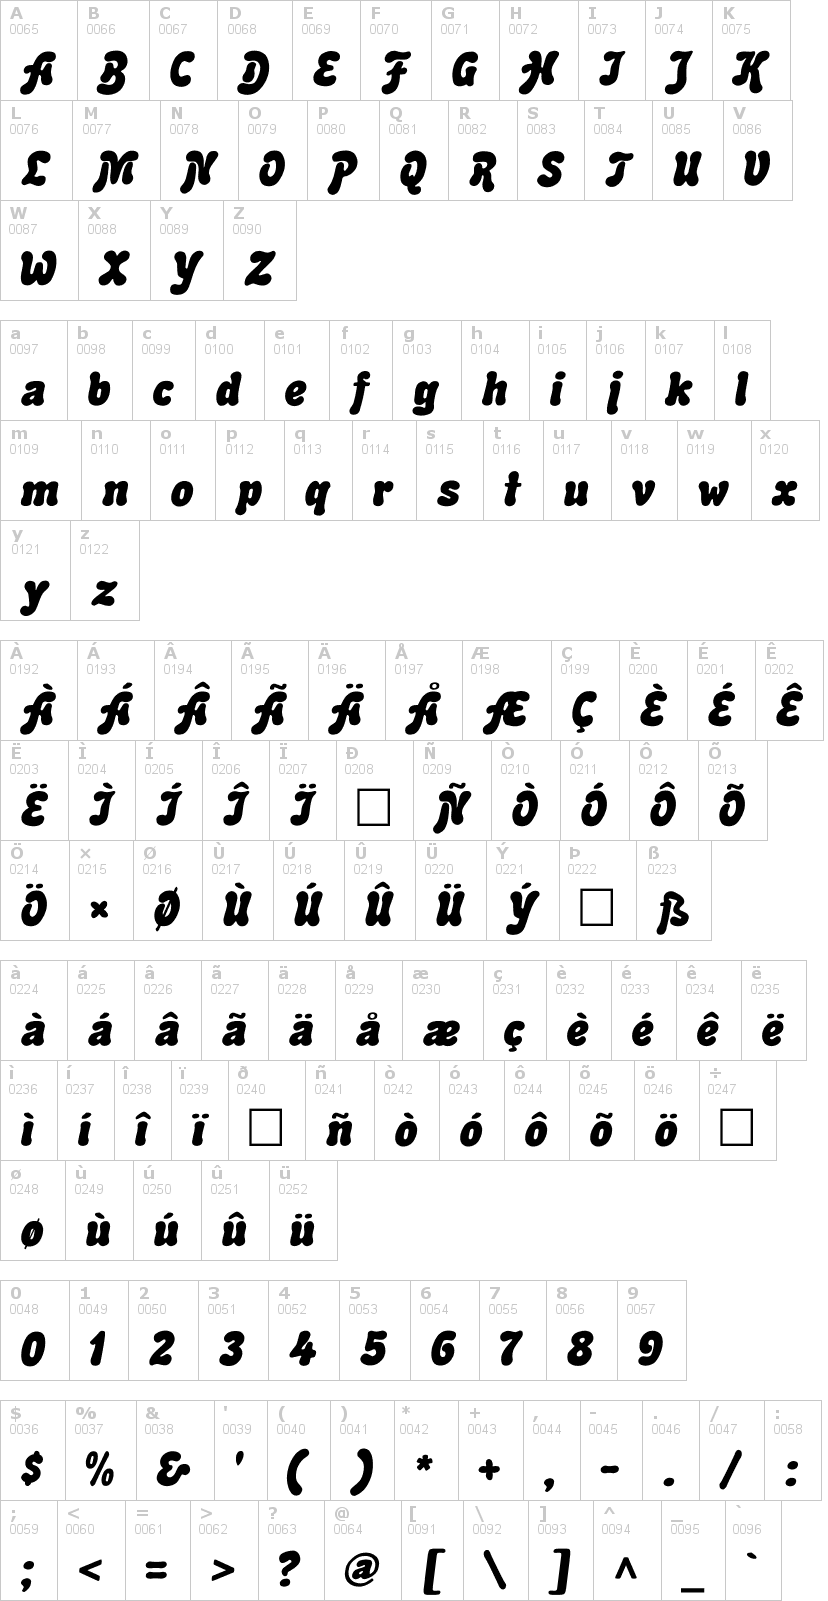 Lettere dell'alfabeto del font advert con le quali è possibile realizzare adesivi prespaziati